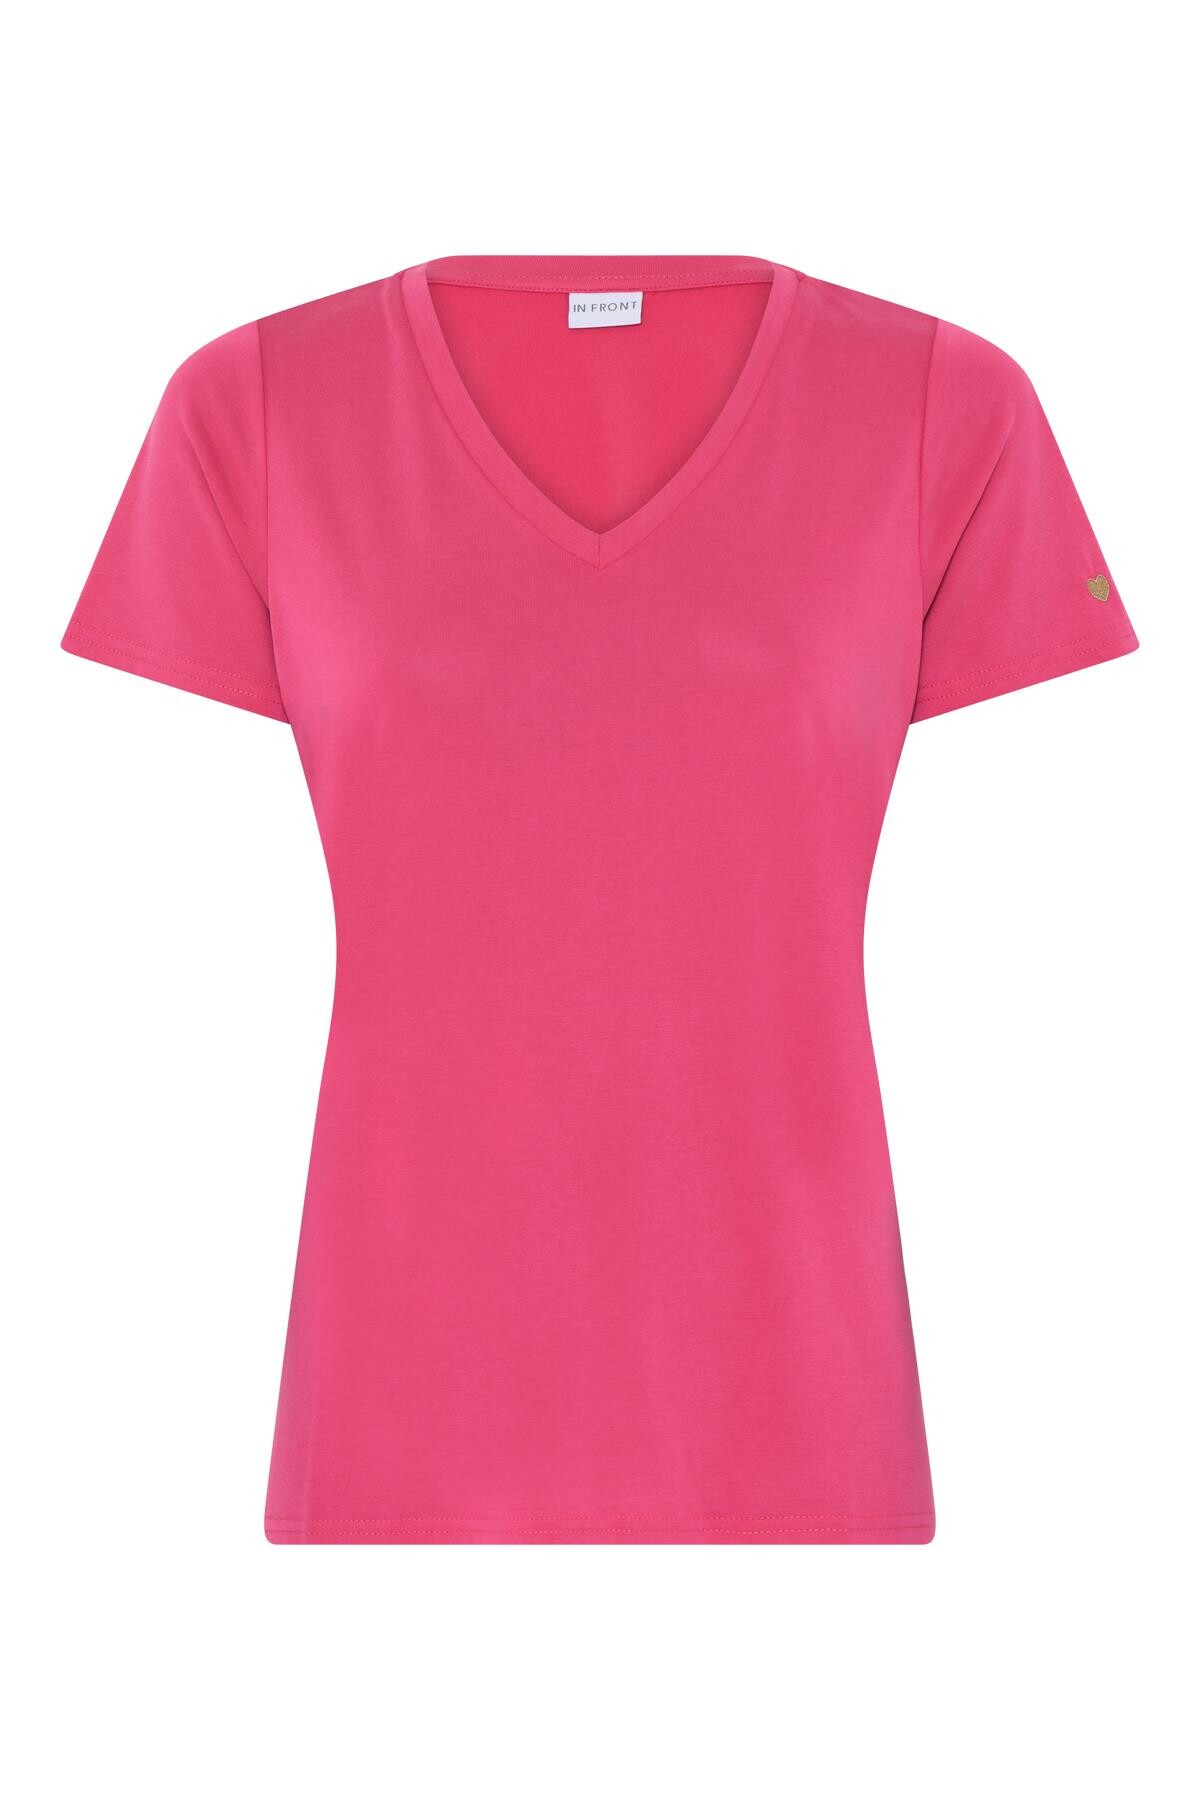 13: In Front Nina T-shirt, Farve: Pink, Størrelse: M, Dame